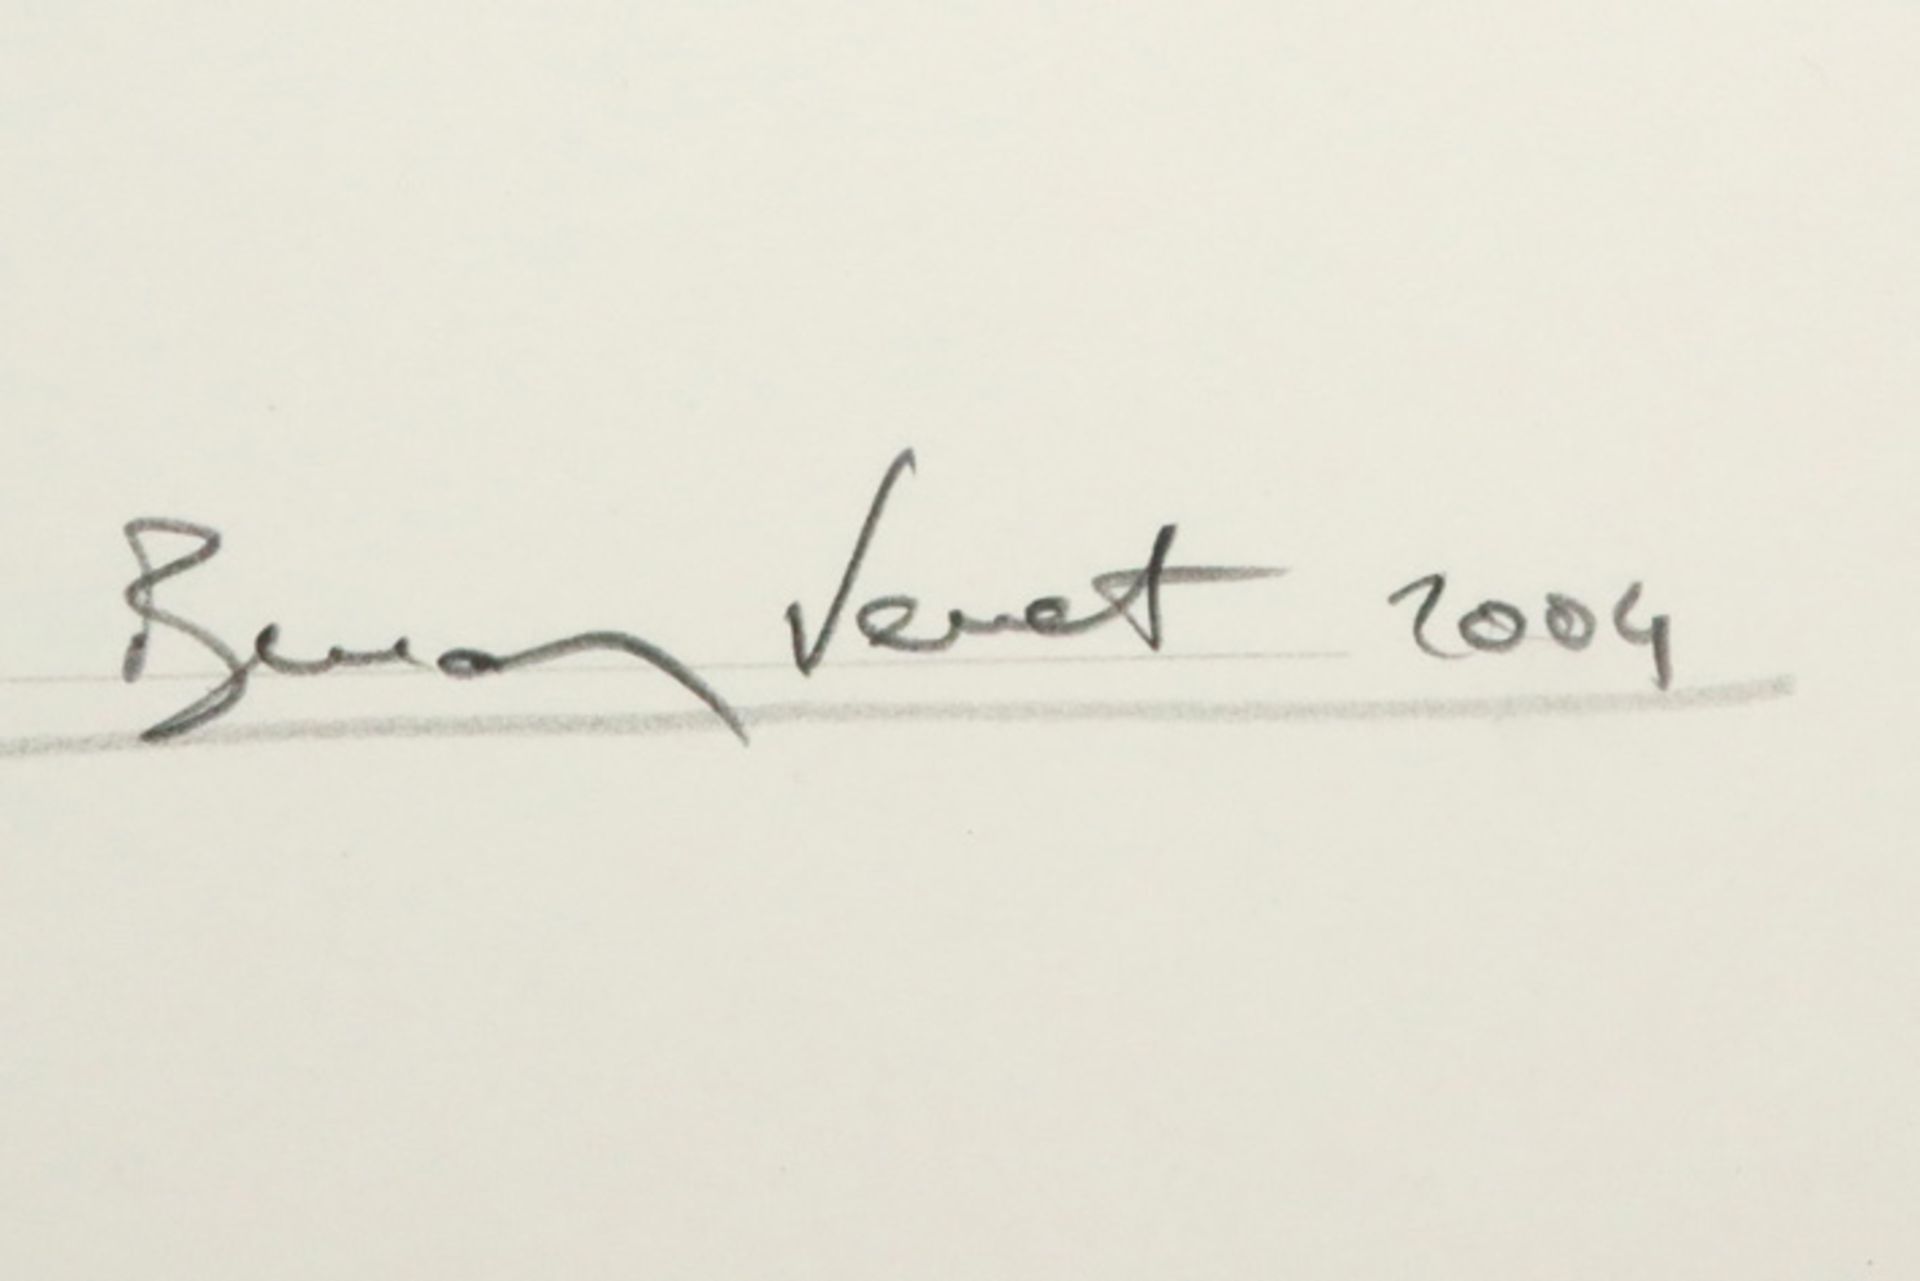 Bernar Venet "Combinaison aléatoire de lignes indéterminées" lithograph - signed and dated 2004 || - Image 2 of 3